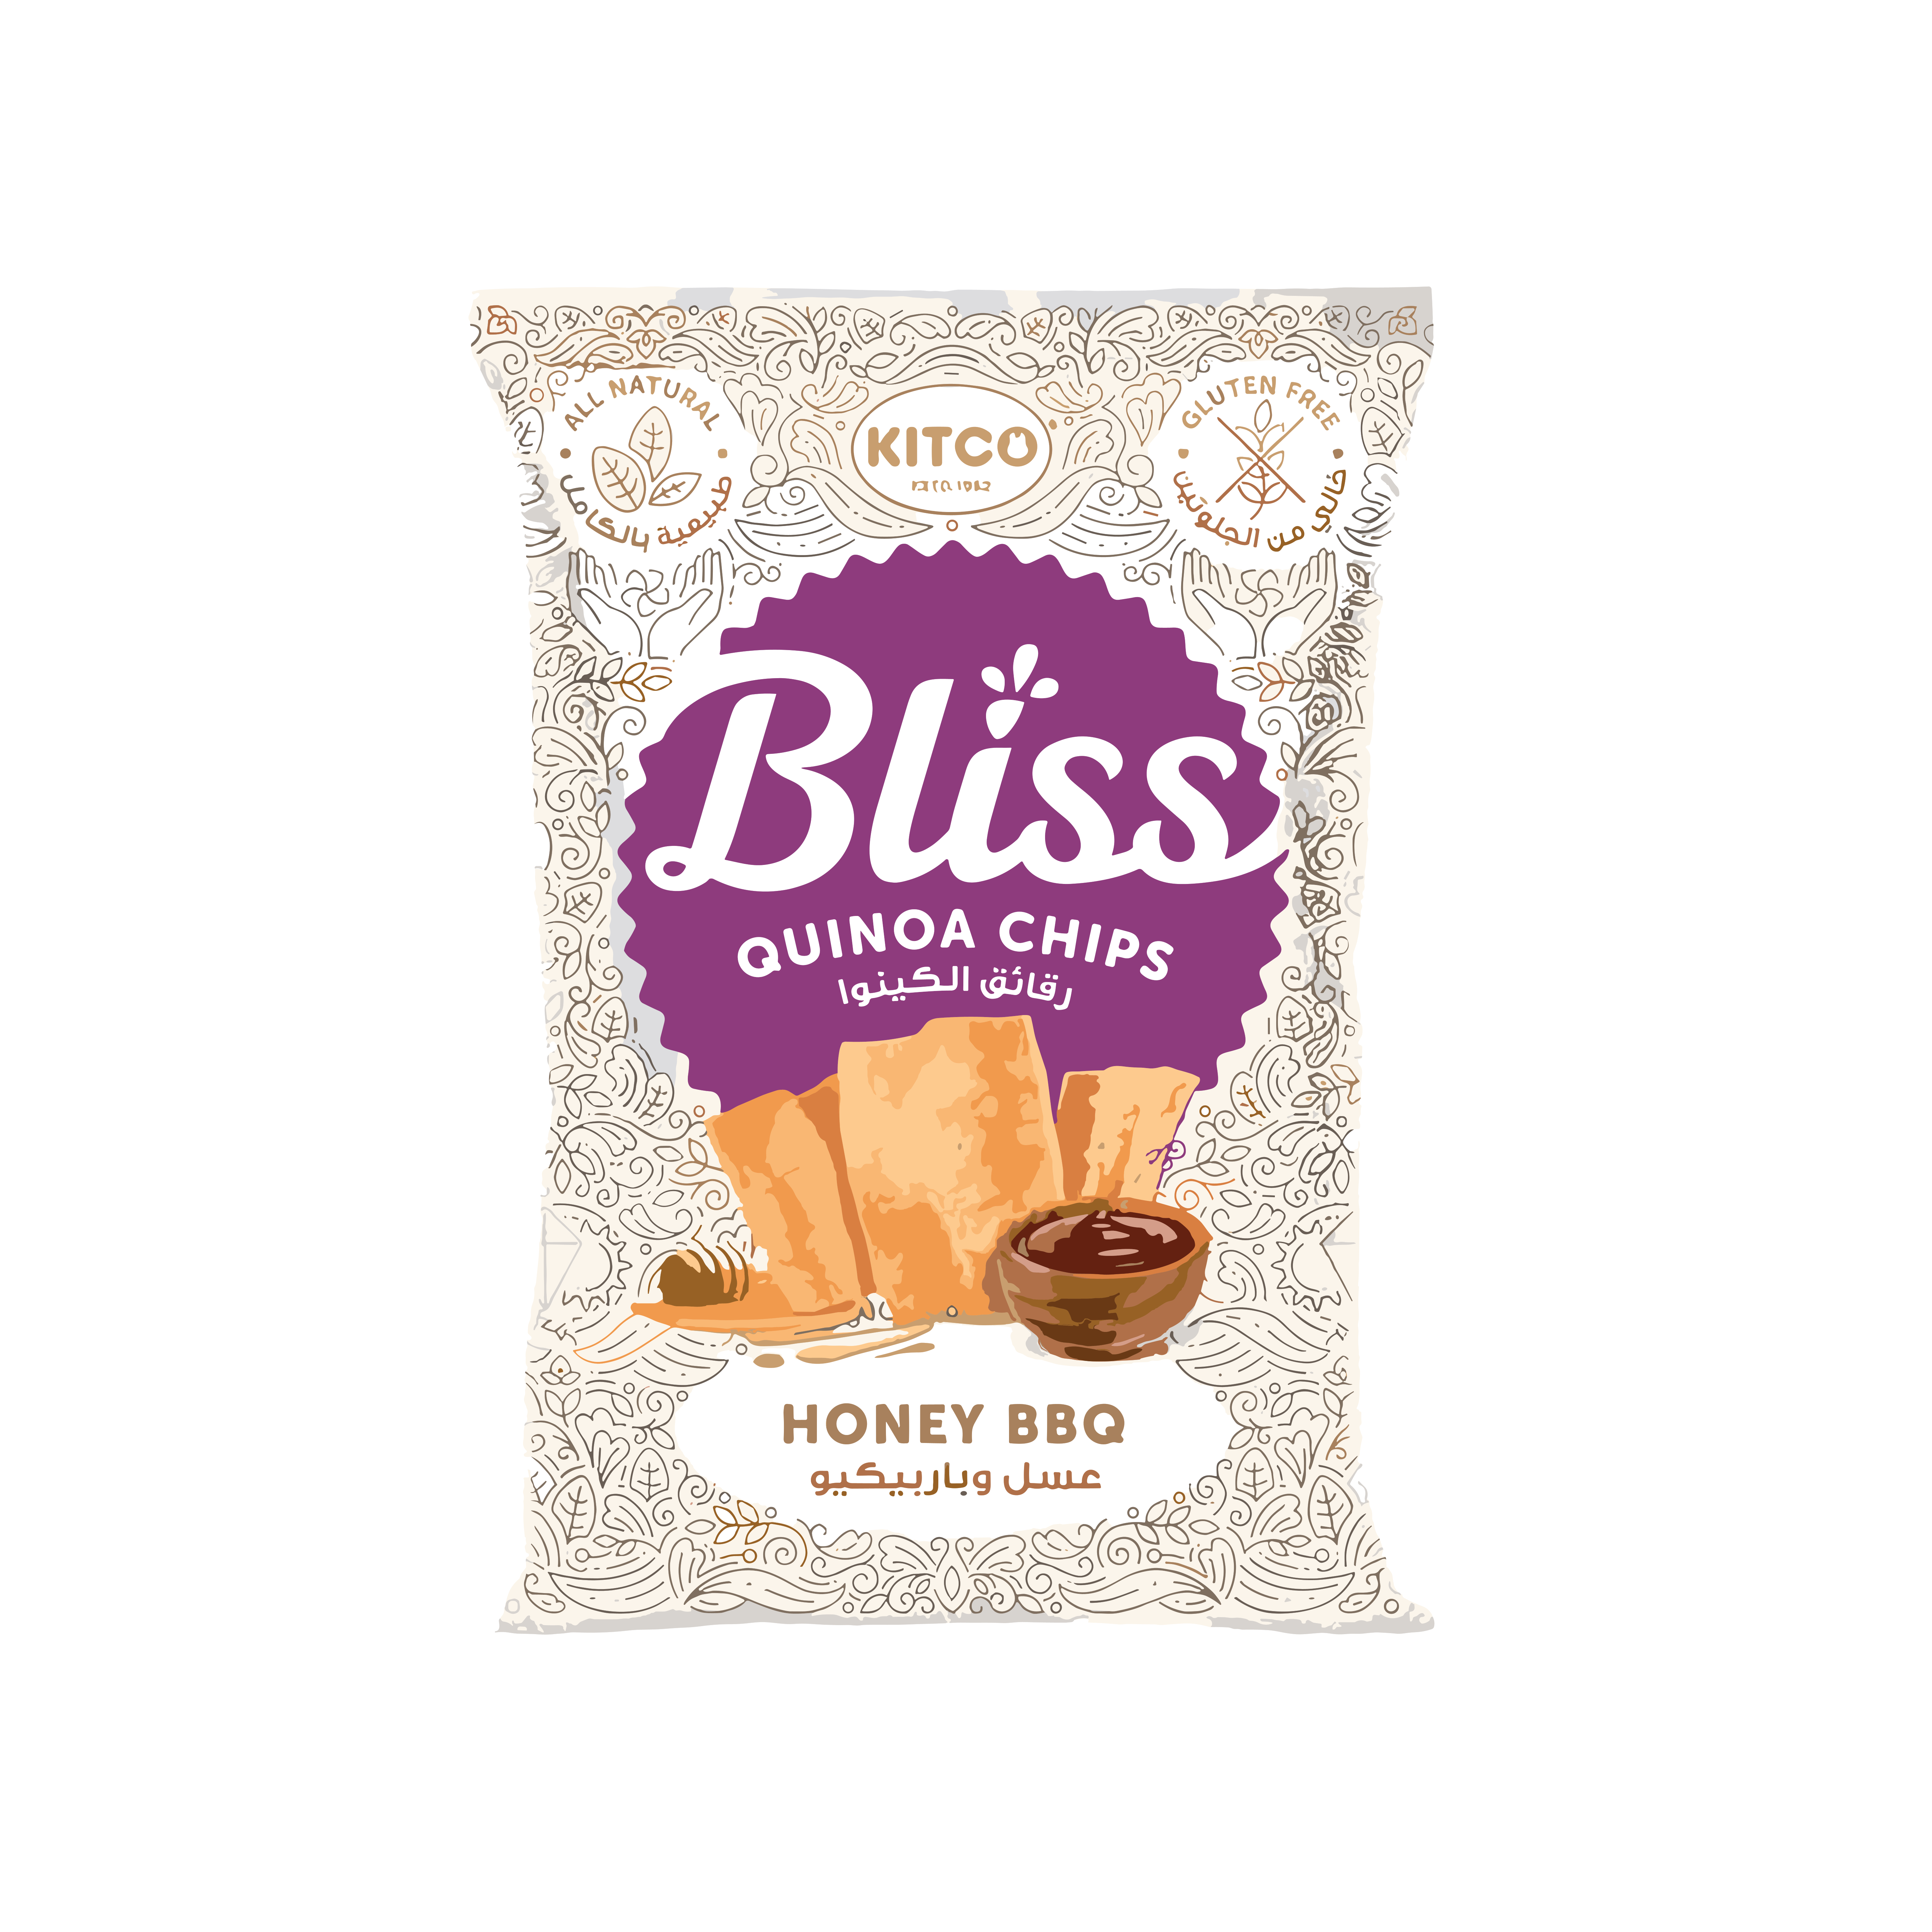 Kitco Bliss Quinoa Chips honey BBQ 34g